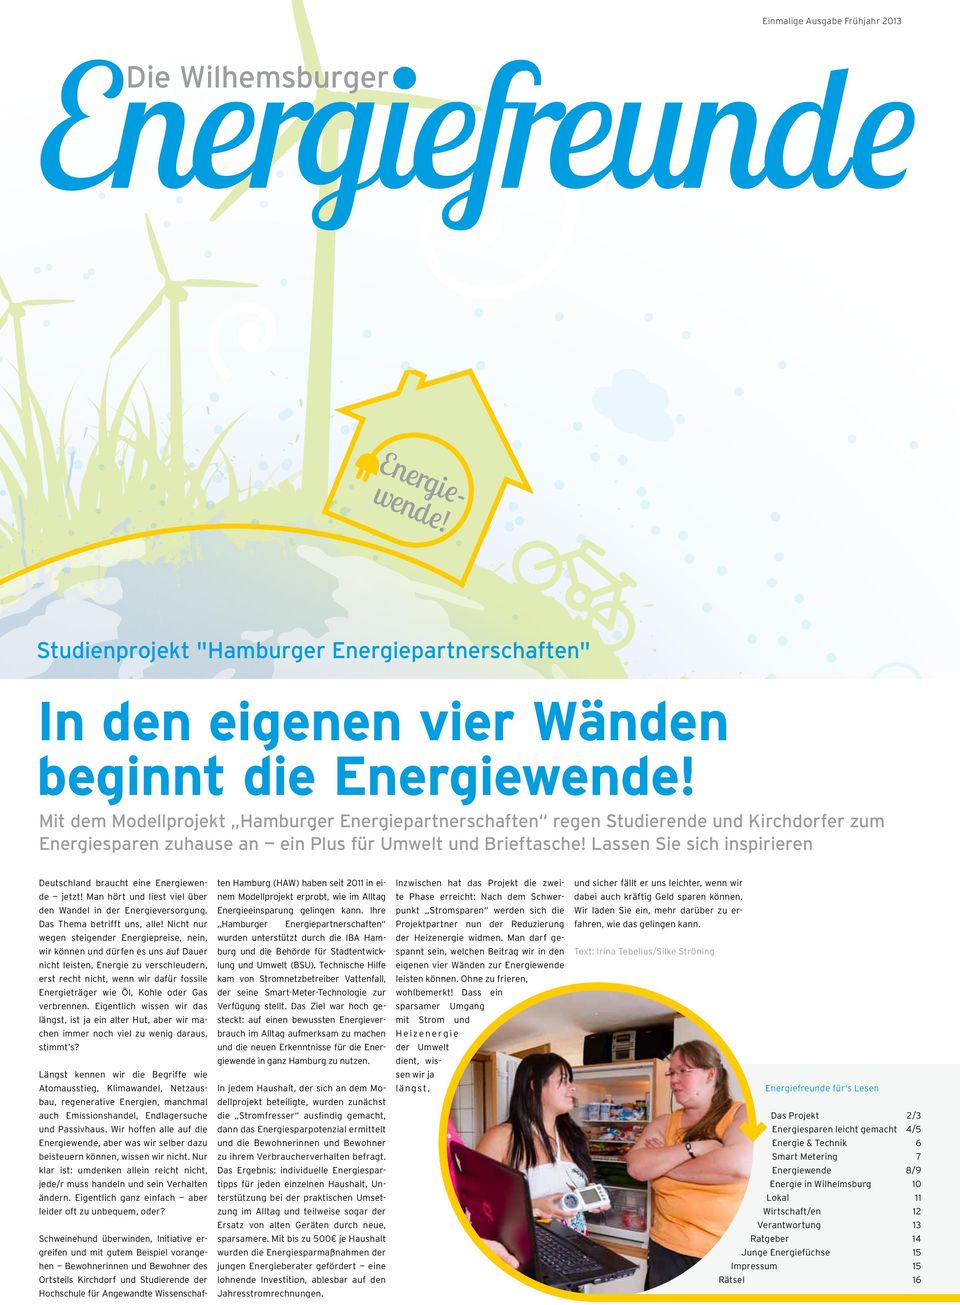 Lassen Sie sich inspirieren Deutschland braucht eine Energiewende jetzt! Man hört und liest viel über den Wandel in der Energieversorgung. Das Thema betrifft uns, alle!